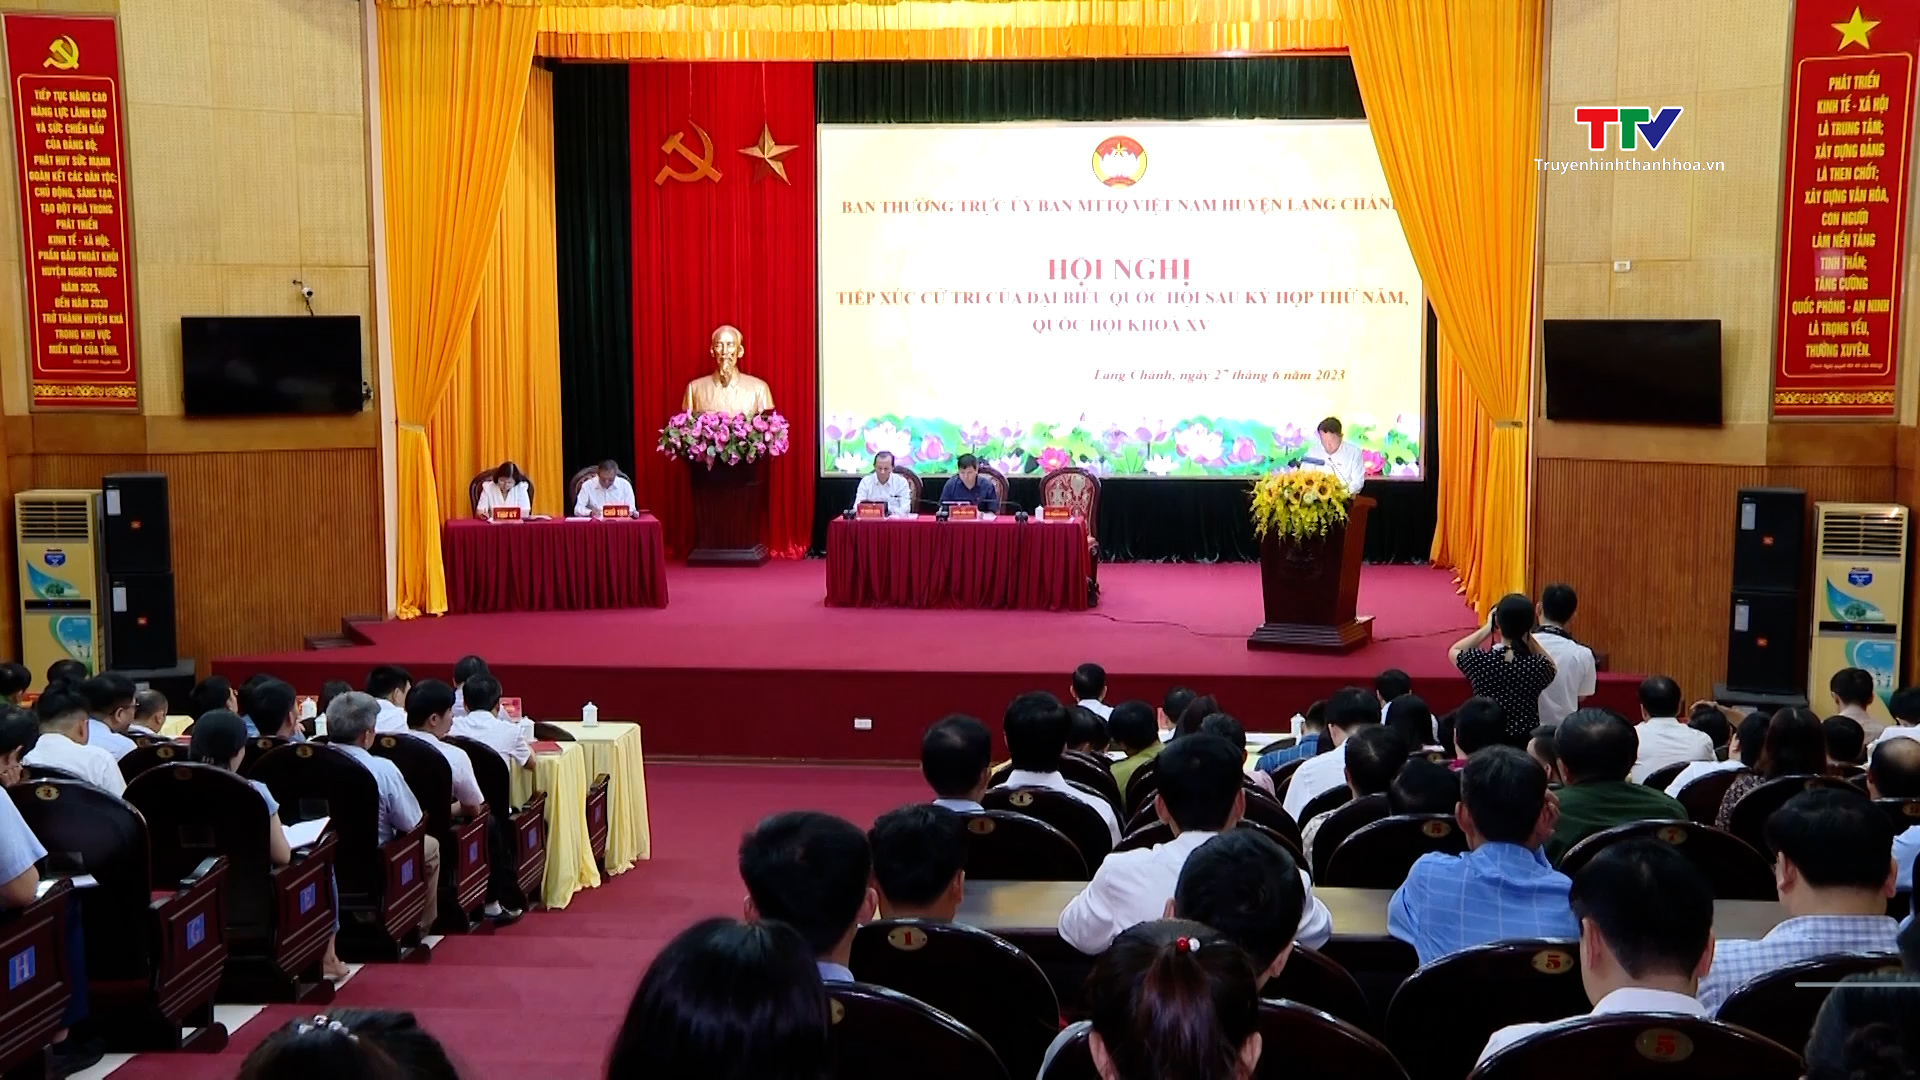 Đoàn Đại biểu Quốc hội tỉnh tiếp xúc cử tri sau Kỳ họp thứ 5, Quốc hội khóa XV tại huyện Lang Chánh, Bá Thước - Ảnh 2.